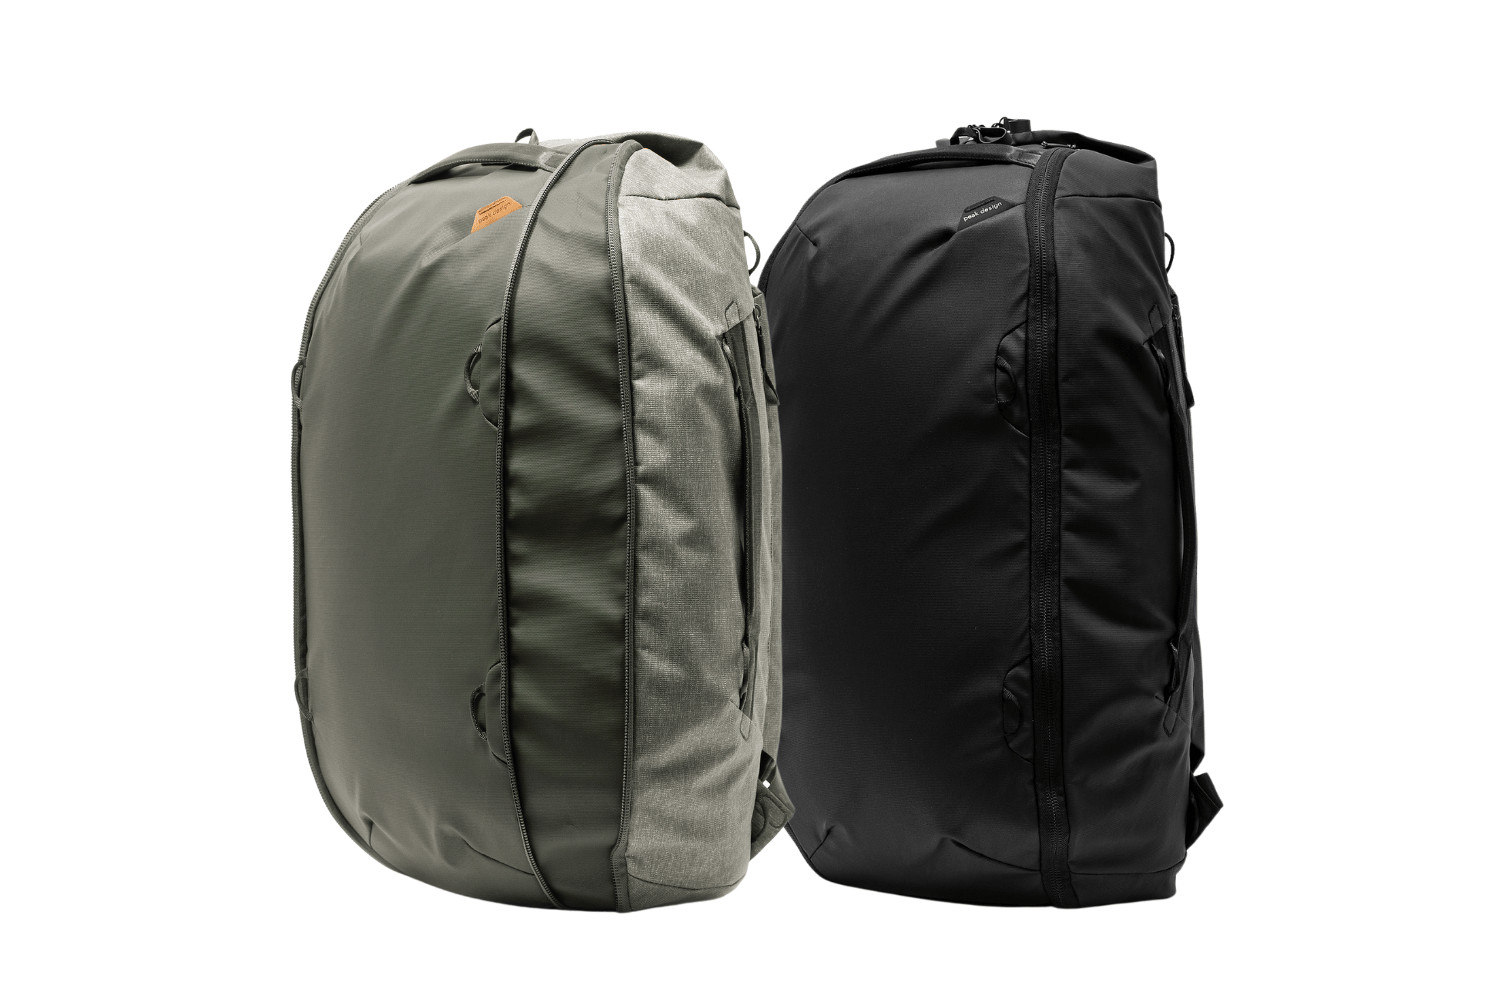 Travel Duffelpack Bag 65 L von Peak Design